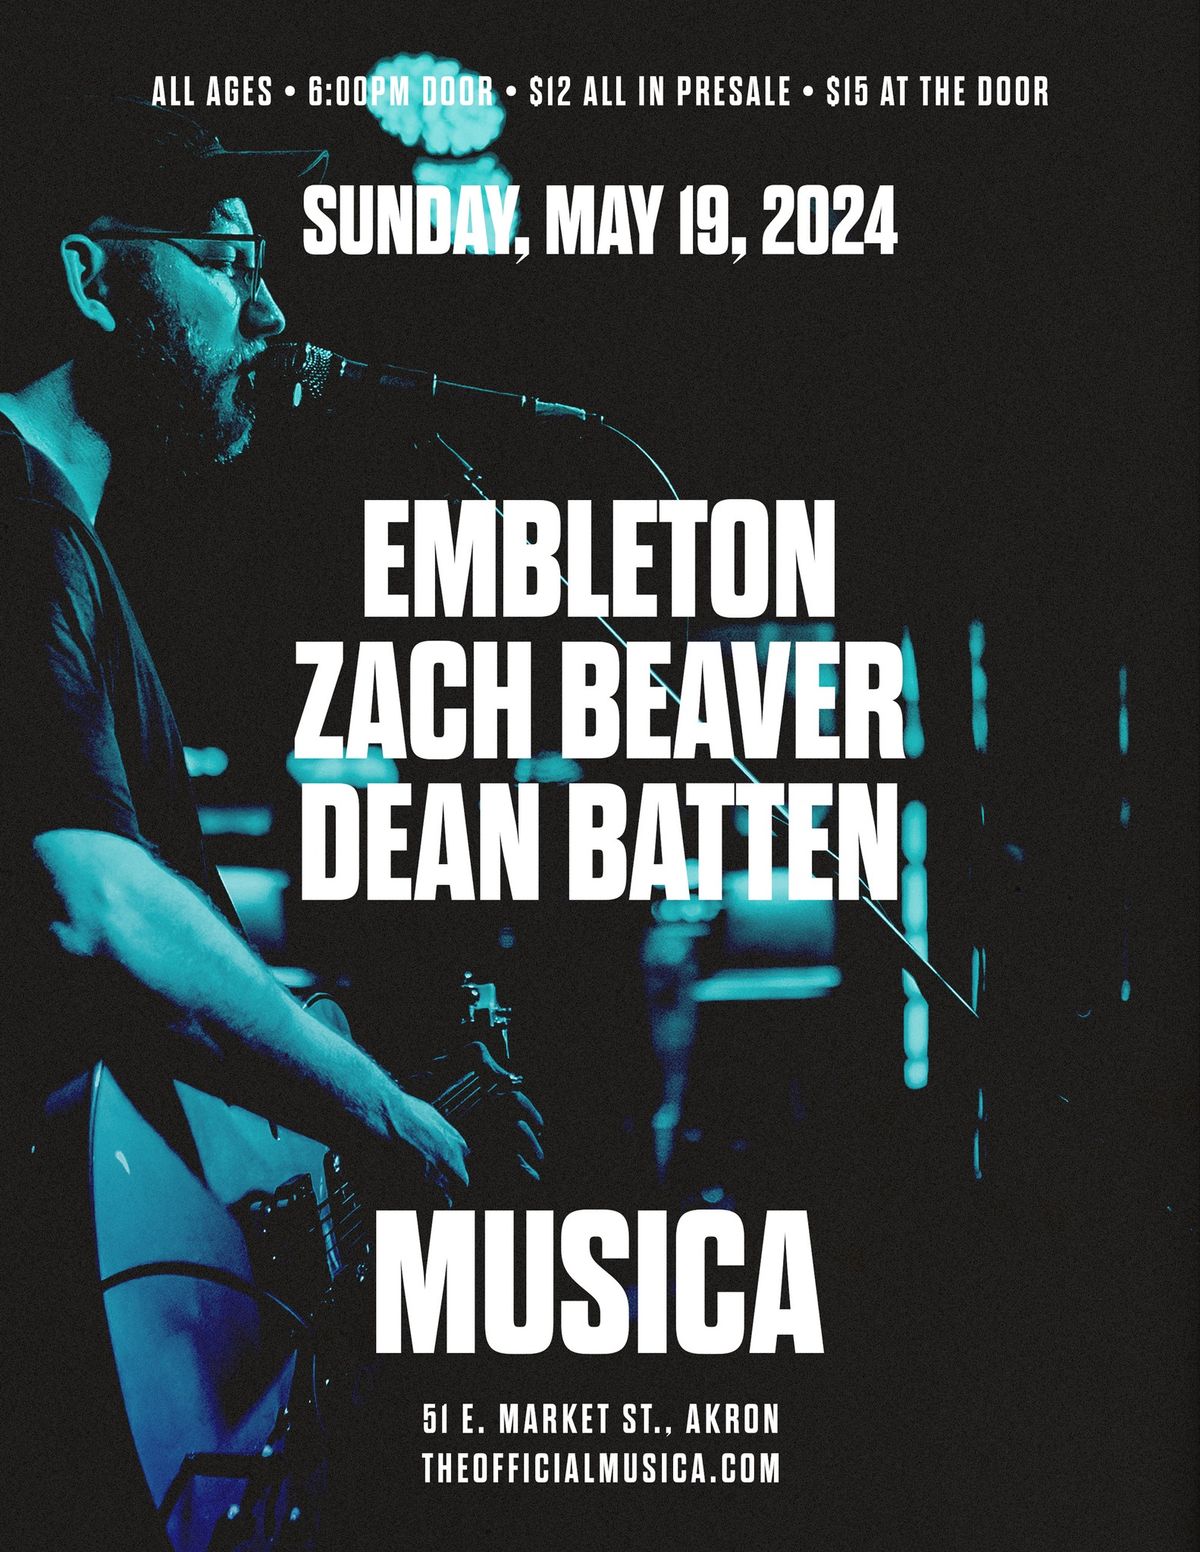 Embleton, Zach Beaver, Dean Batten at Musica